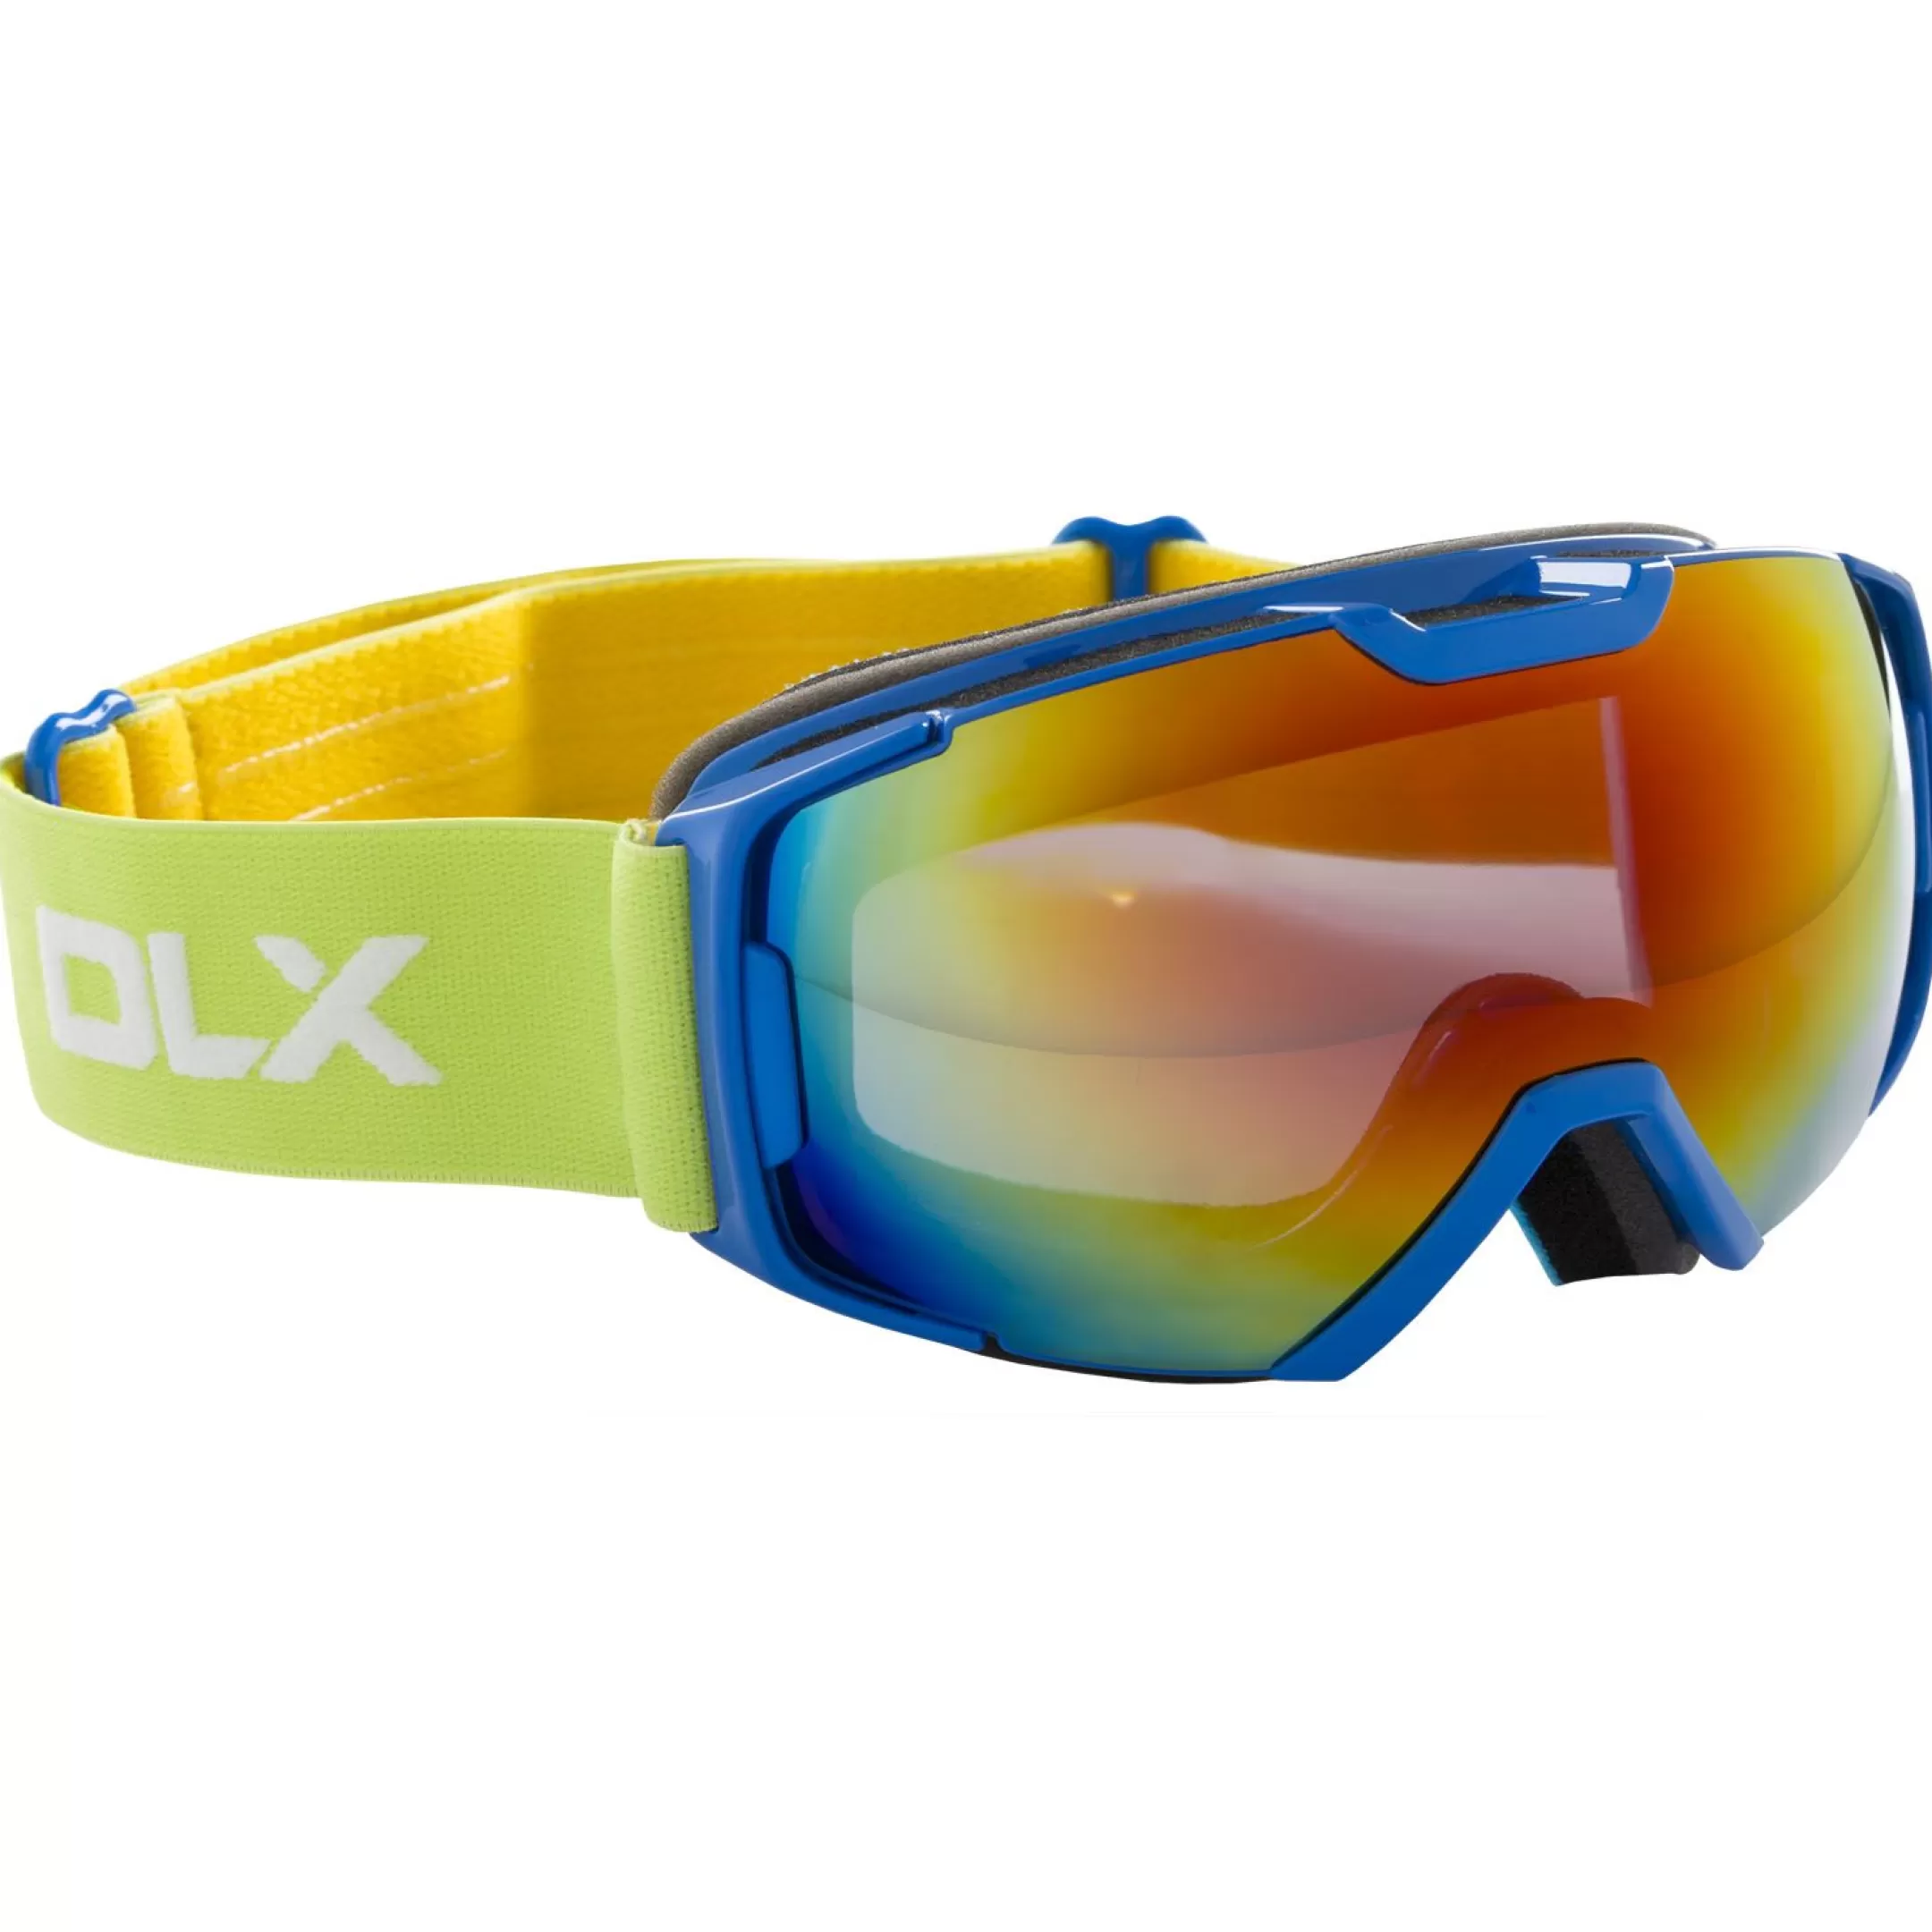 Oath Kids DLX Ski Goggles | Trespass Store